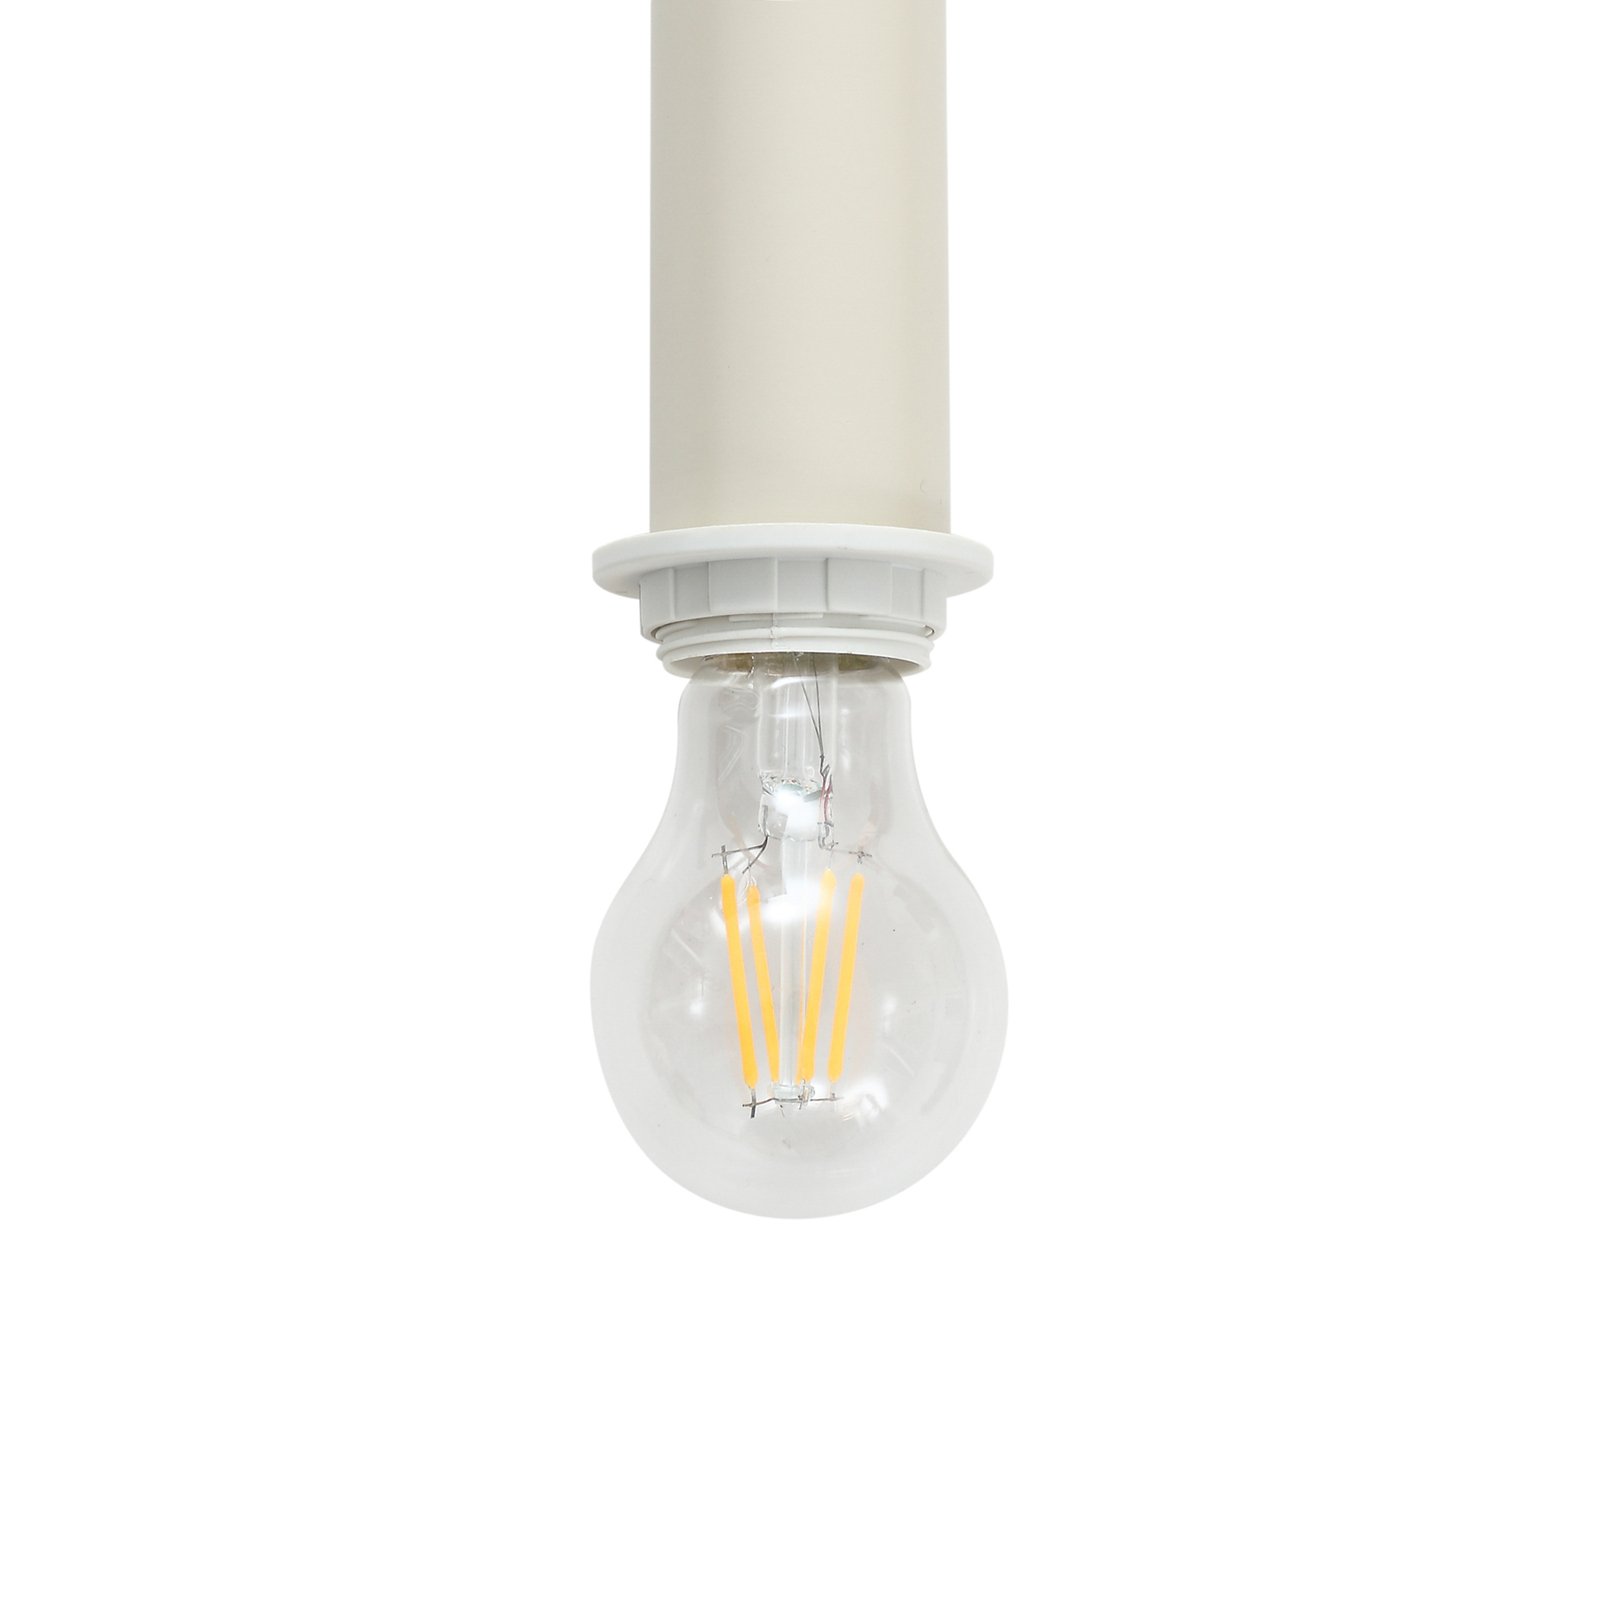 Lindby hanglamp Ovelia, beige, 4-lamps, ijzer, E27